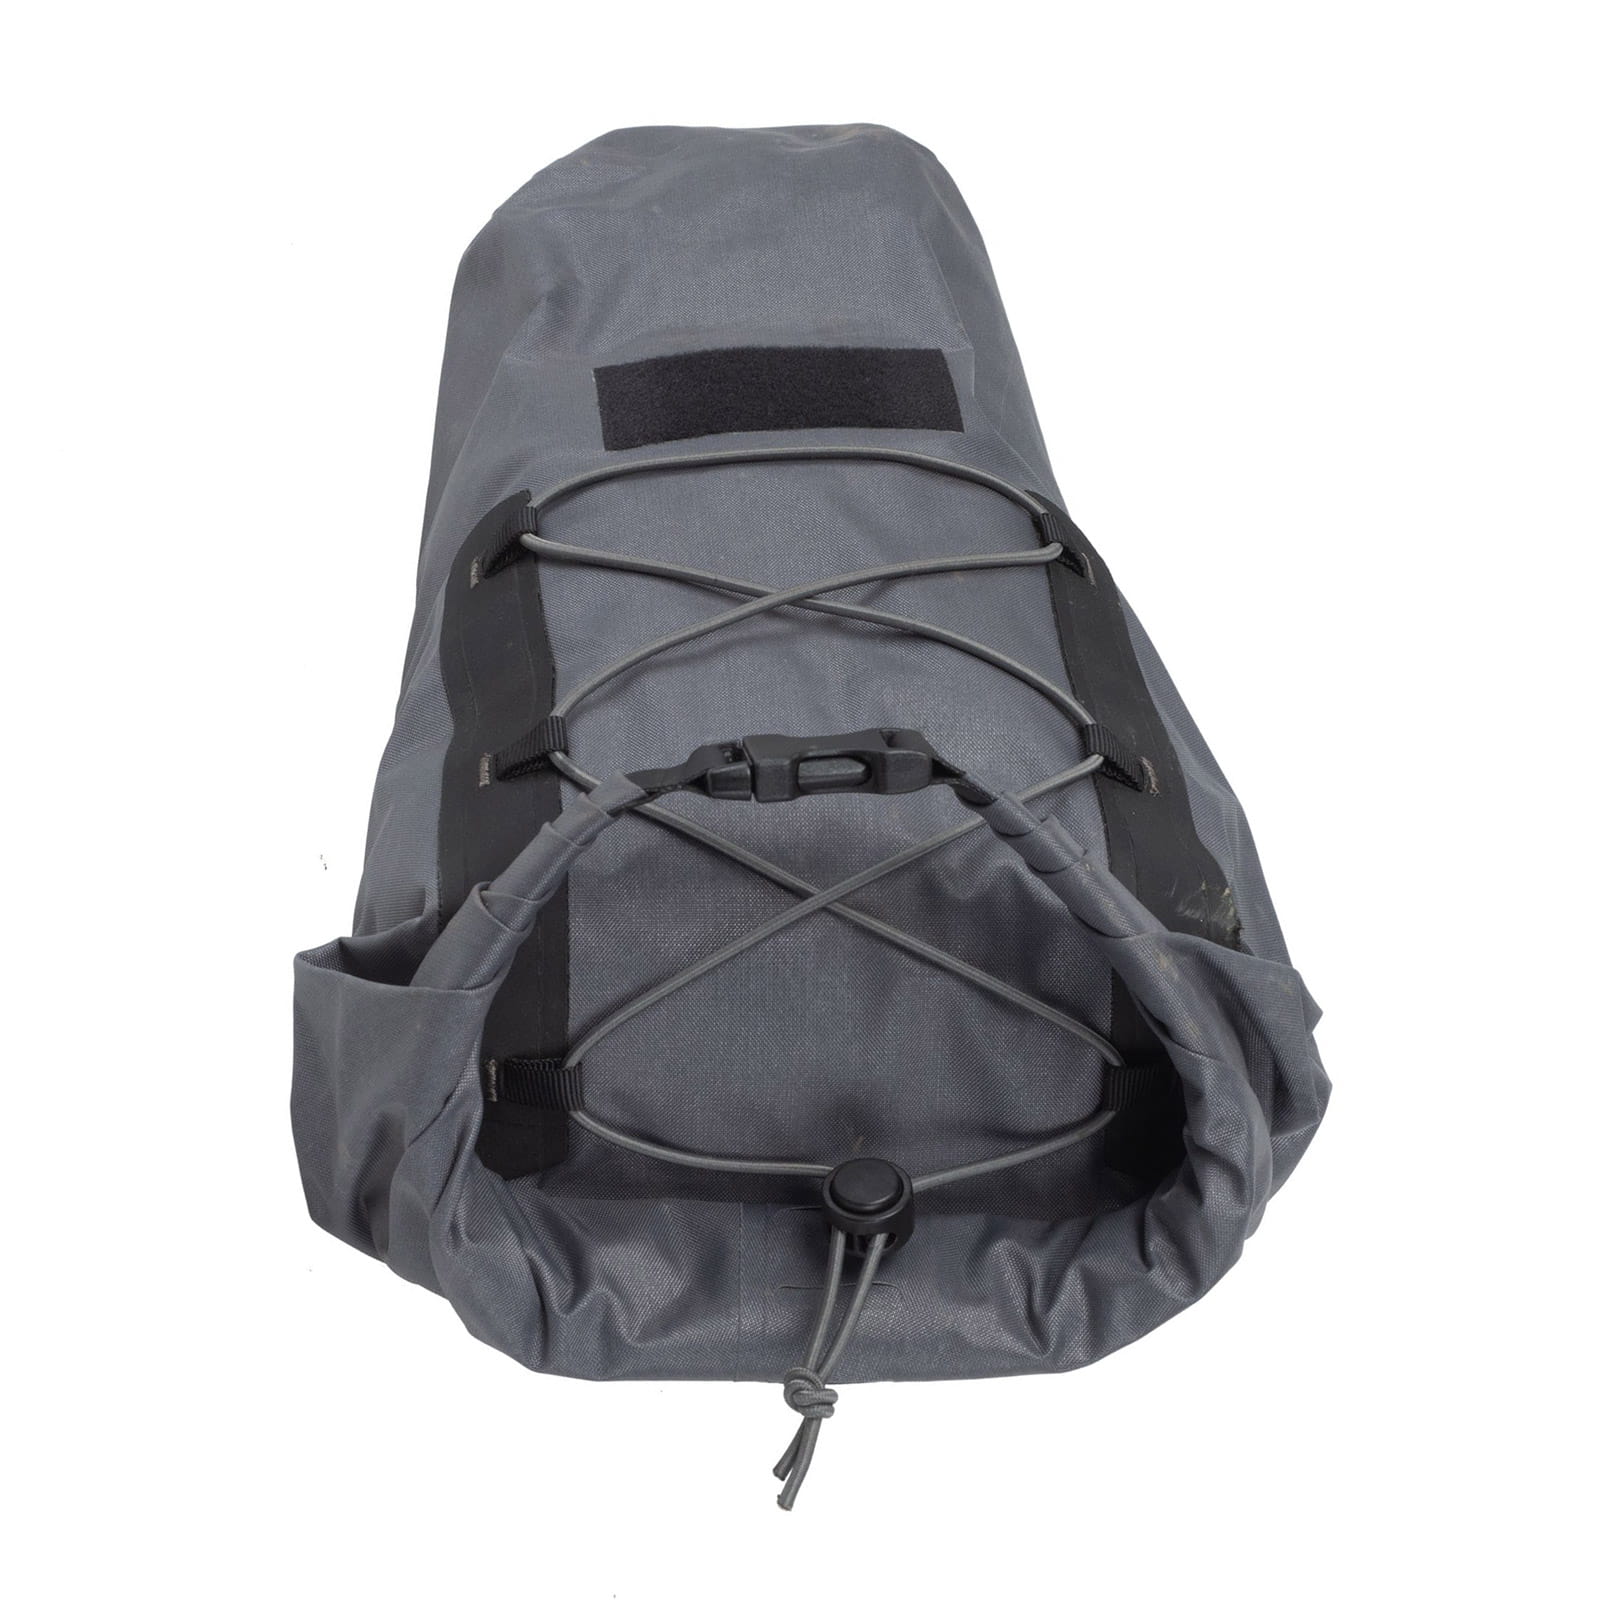 Blackburn Outpost Elite Seat Pack & Dry Bag Saddlebag